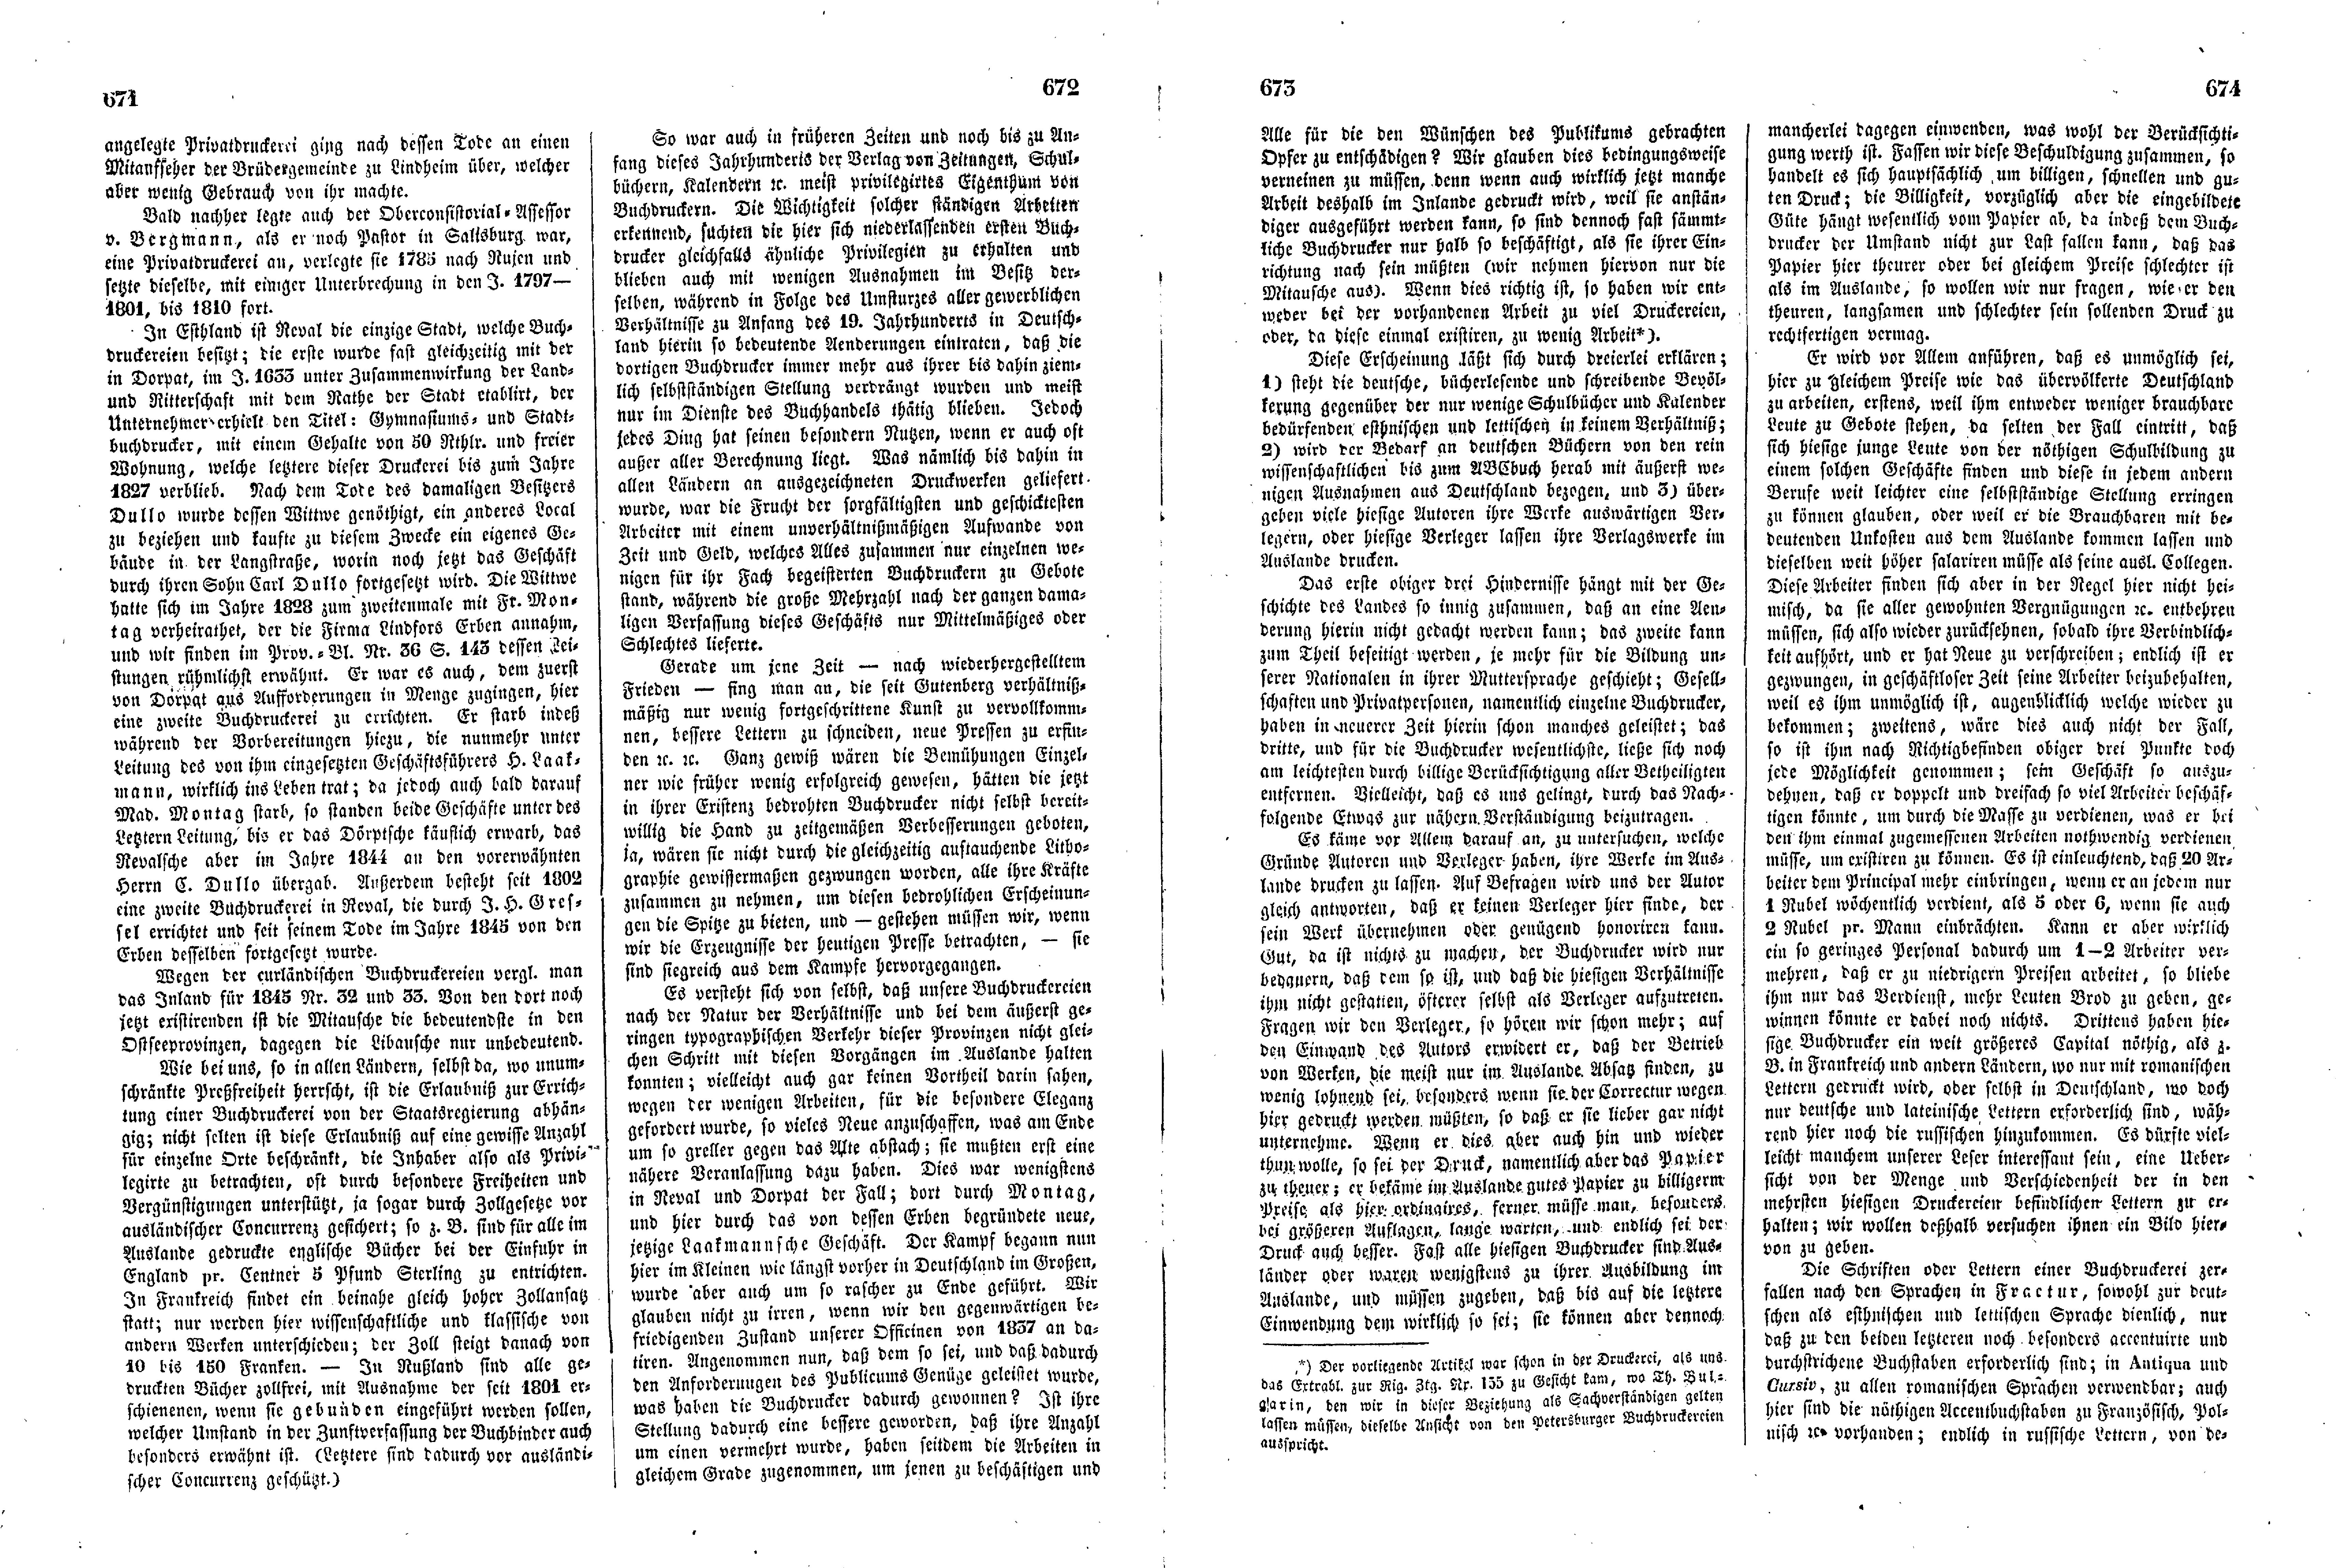 Das Inland [11] (1846) | 173. (671-674) Основной текст